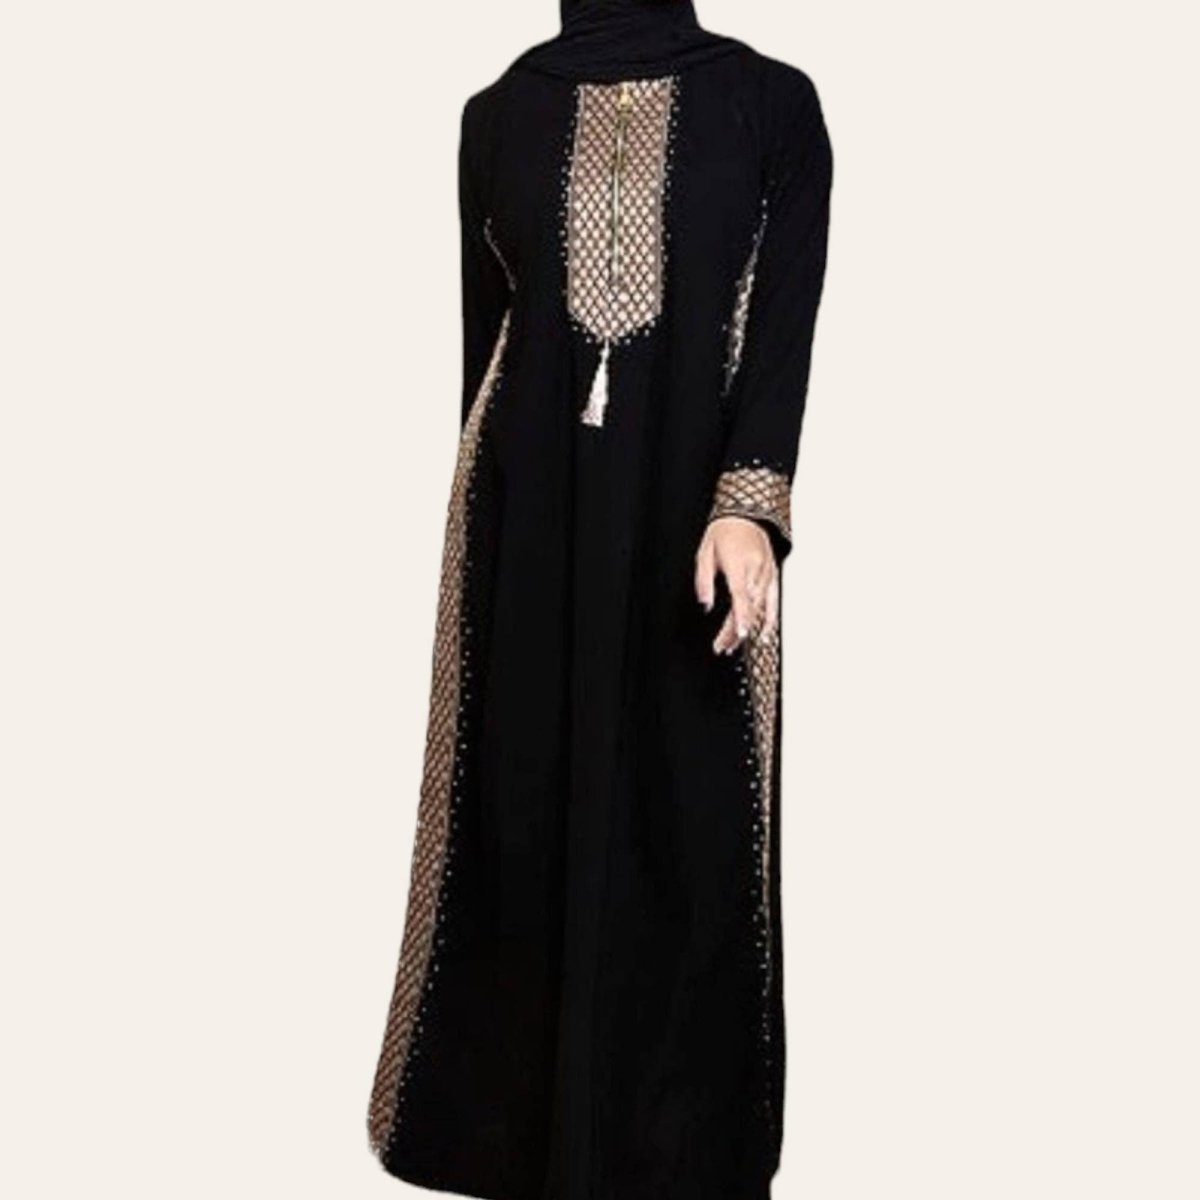 Abaya Dress for Hajj and Umrah Clothing - Zhaviah